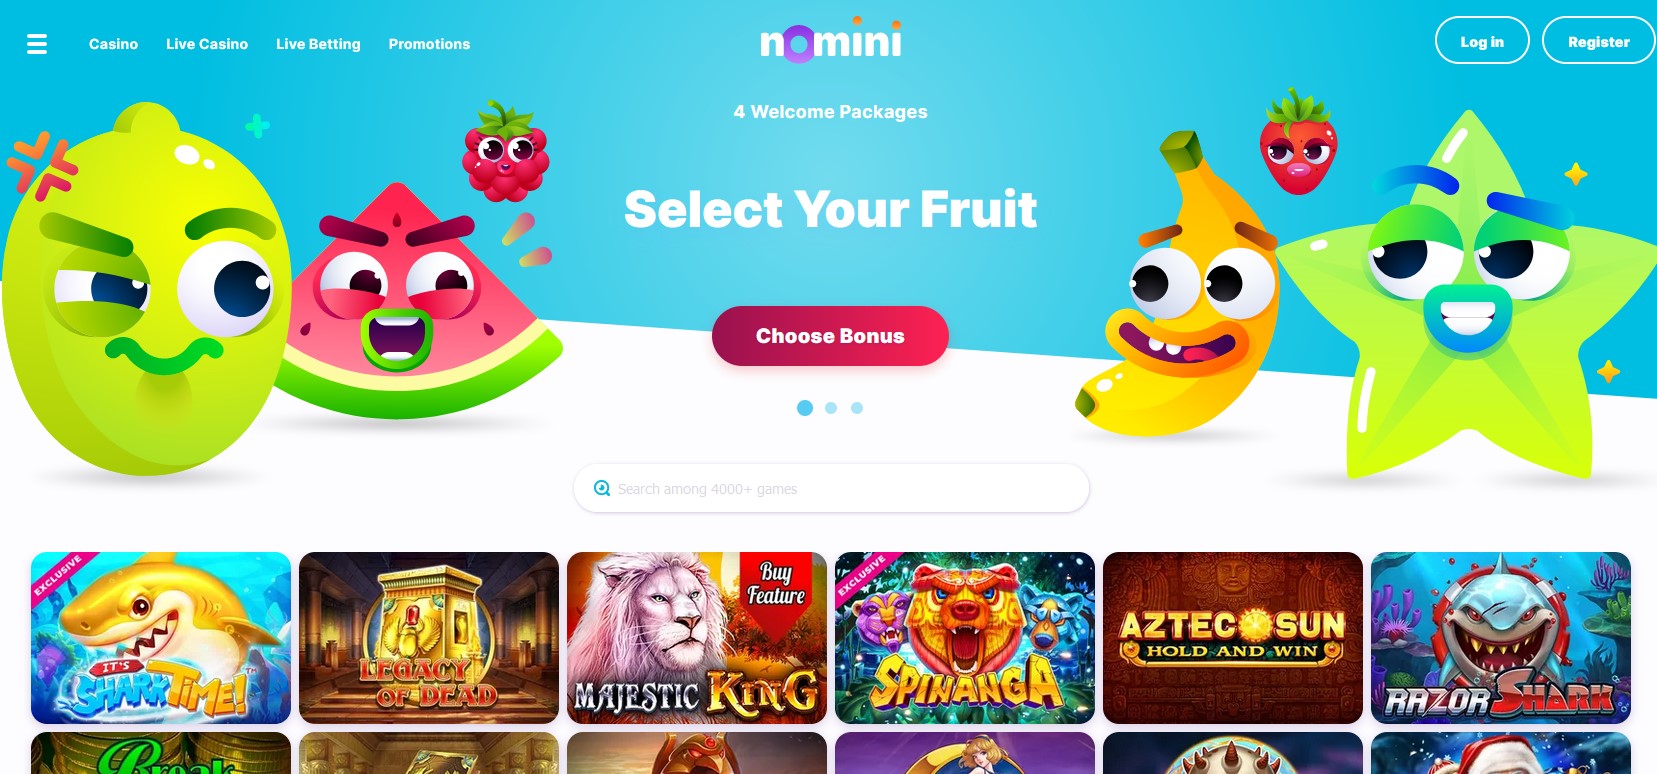 nomini casino website homepage screenshot